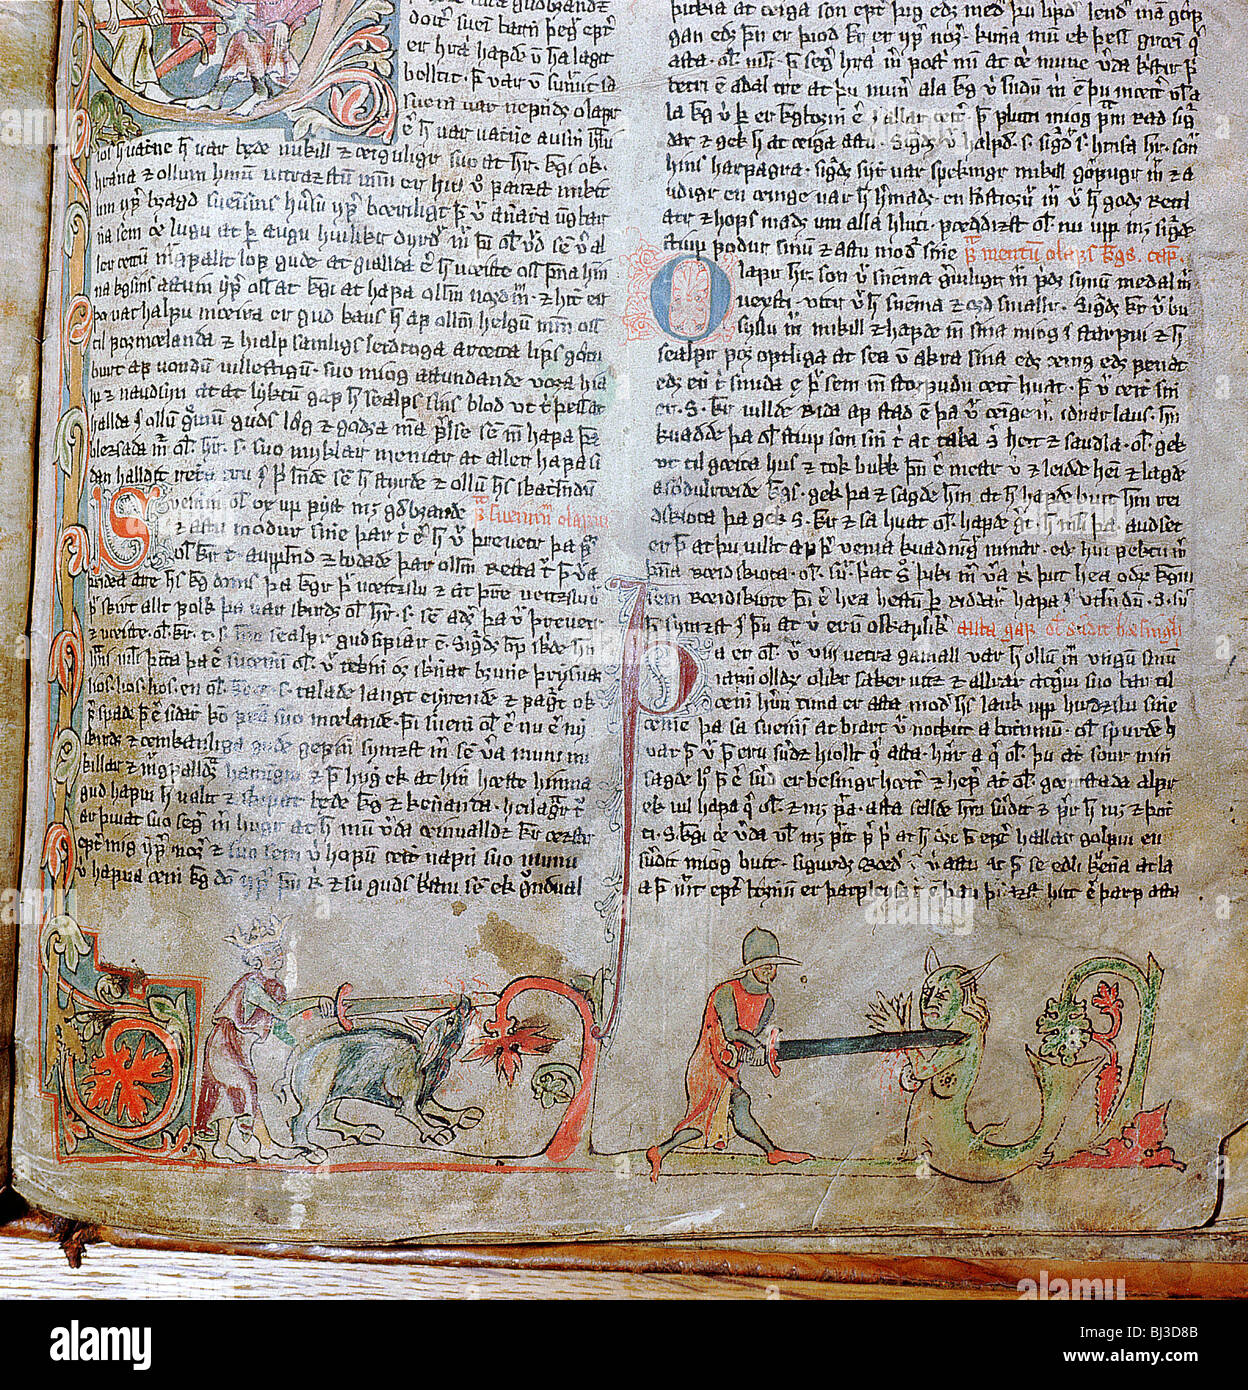 Abbildung aus der Sammlung des isländischen Sagas, Flateyjarbok, Viking, 14. Jahrhundert. Künstler: Werner Forman Stockfoto